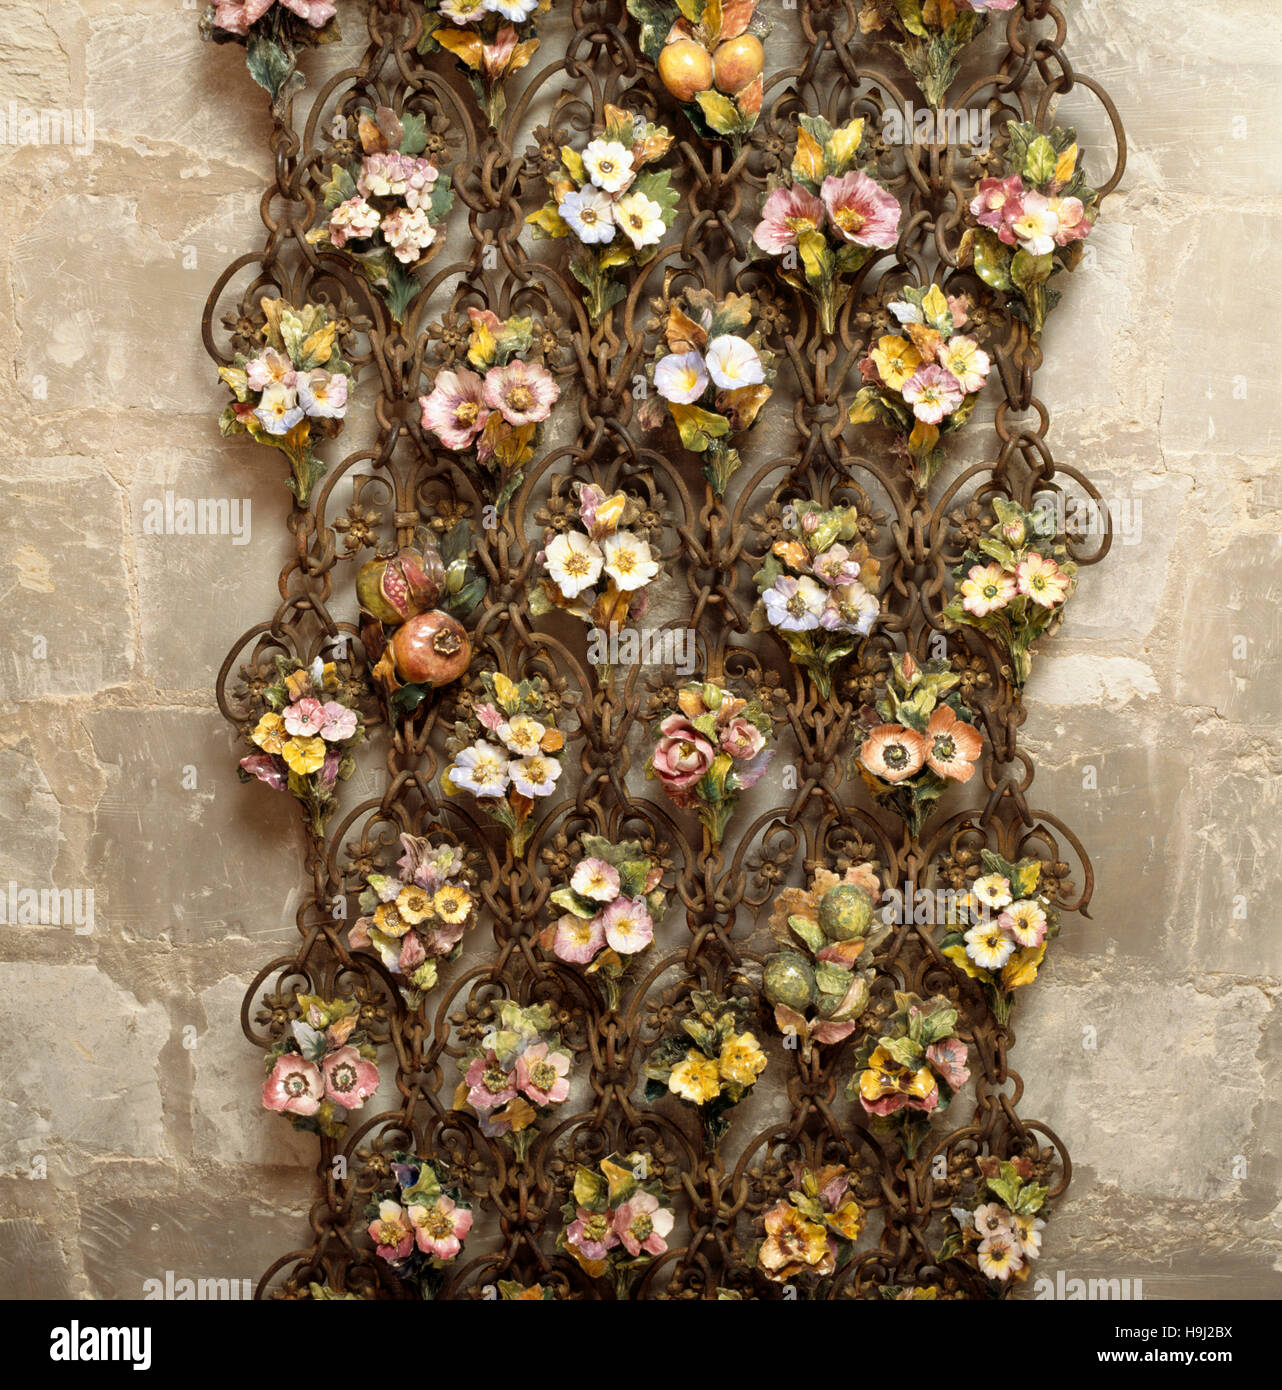 Der Norden italienischen Maschendrahtgeflecht-Bildschirm, dekoriert mit Keramik Obst und Blumen in der Süd-Terrasse zeugt von Herrn Fairhaven Liebe zum Handwerk Stockfoto